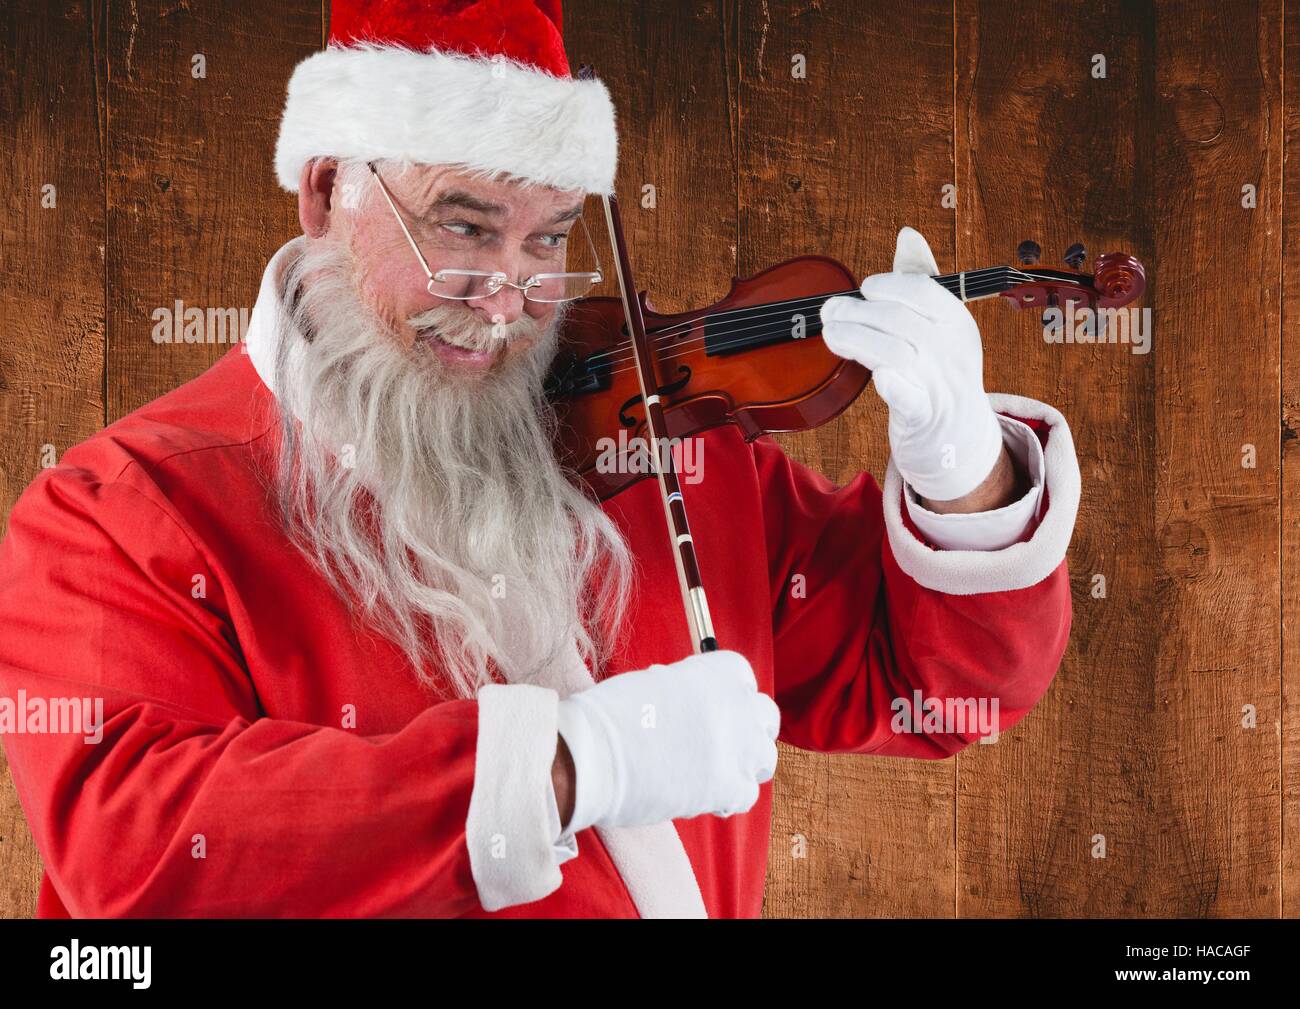 Santa claus playing violin Stock Photo